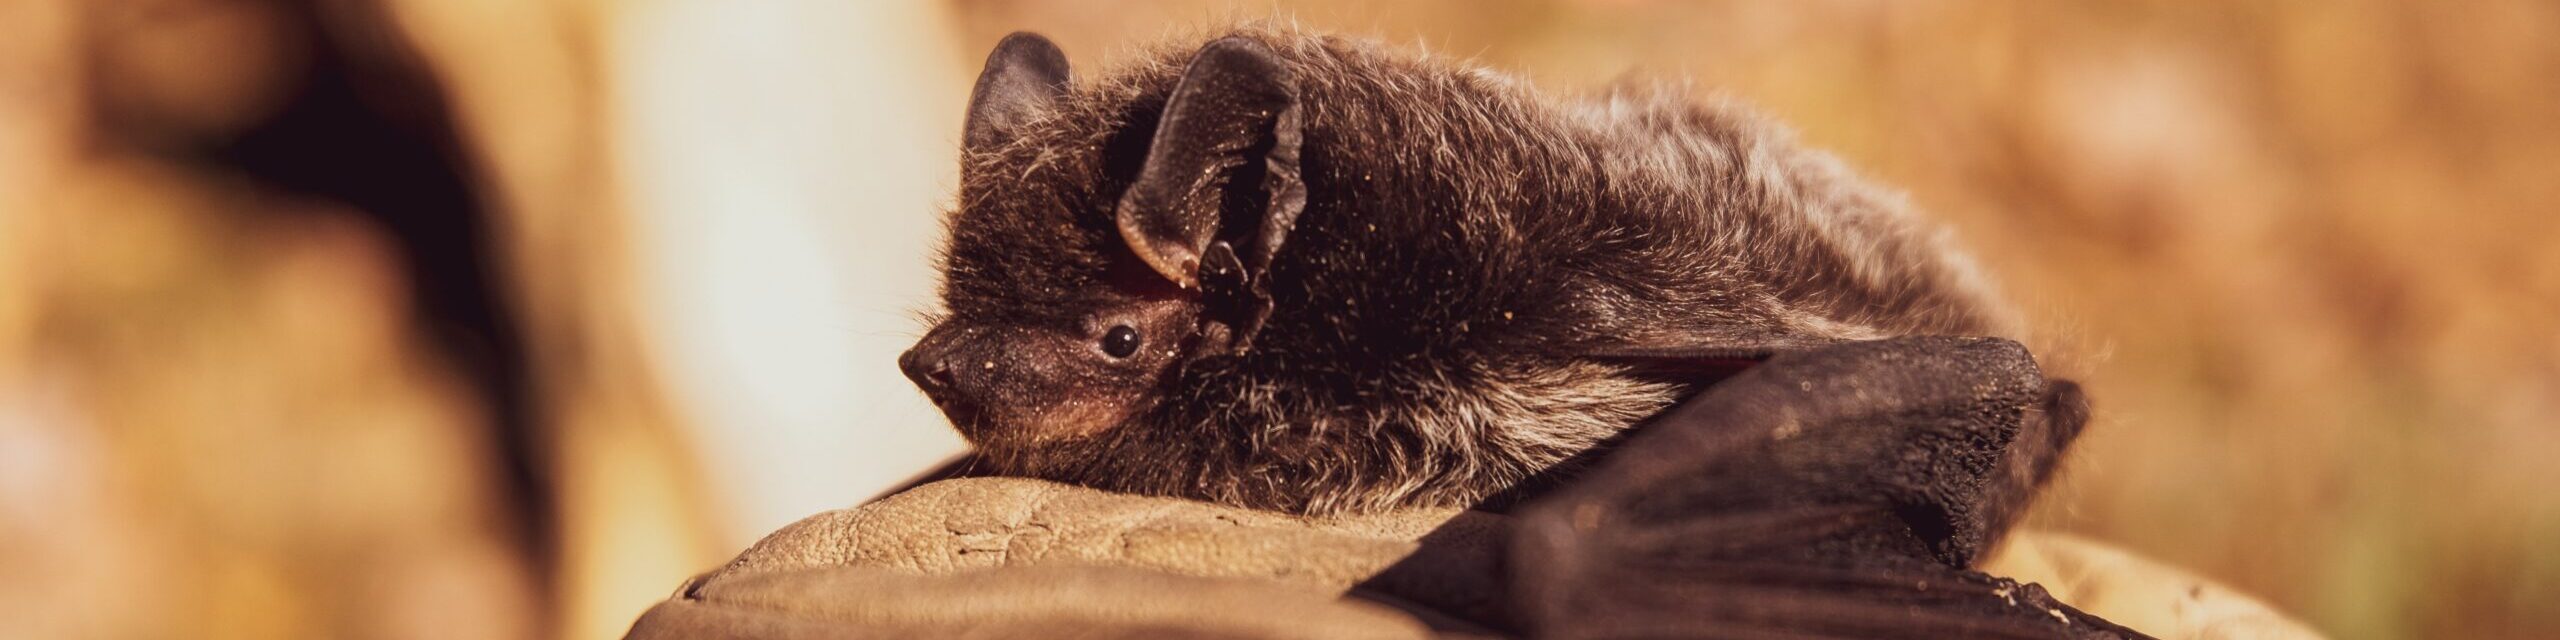 Bat-tastic Fun Facts